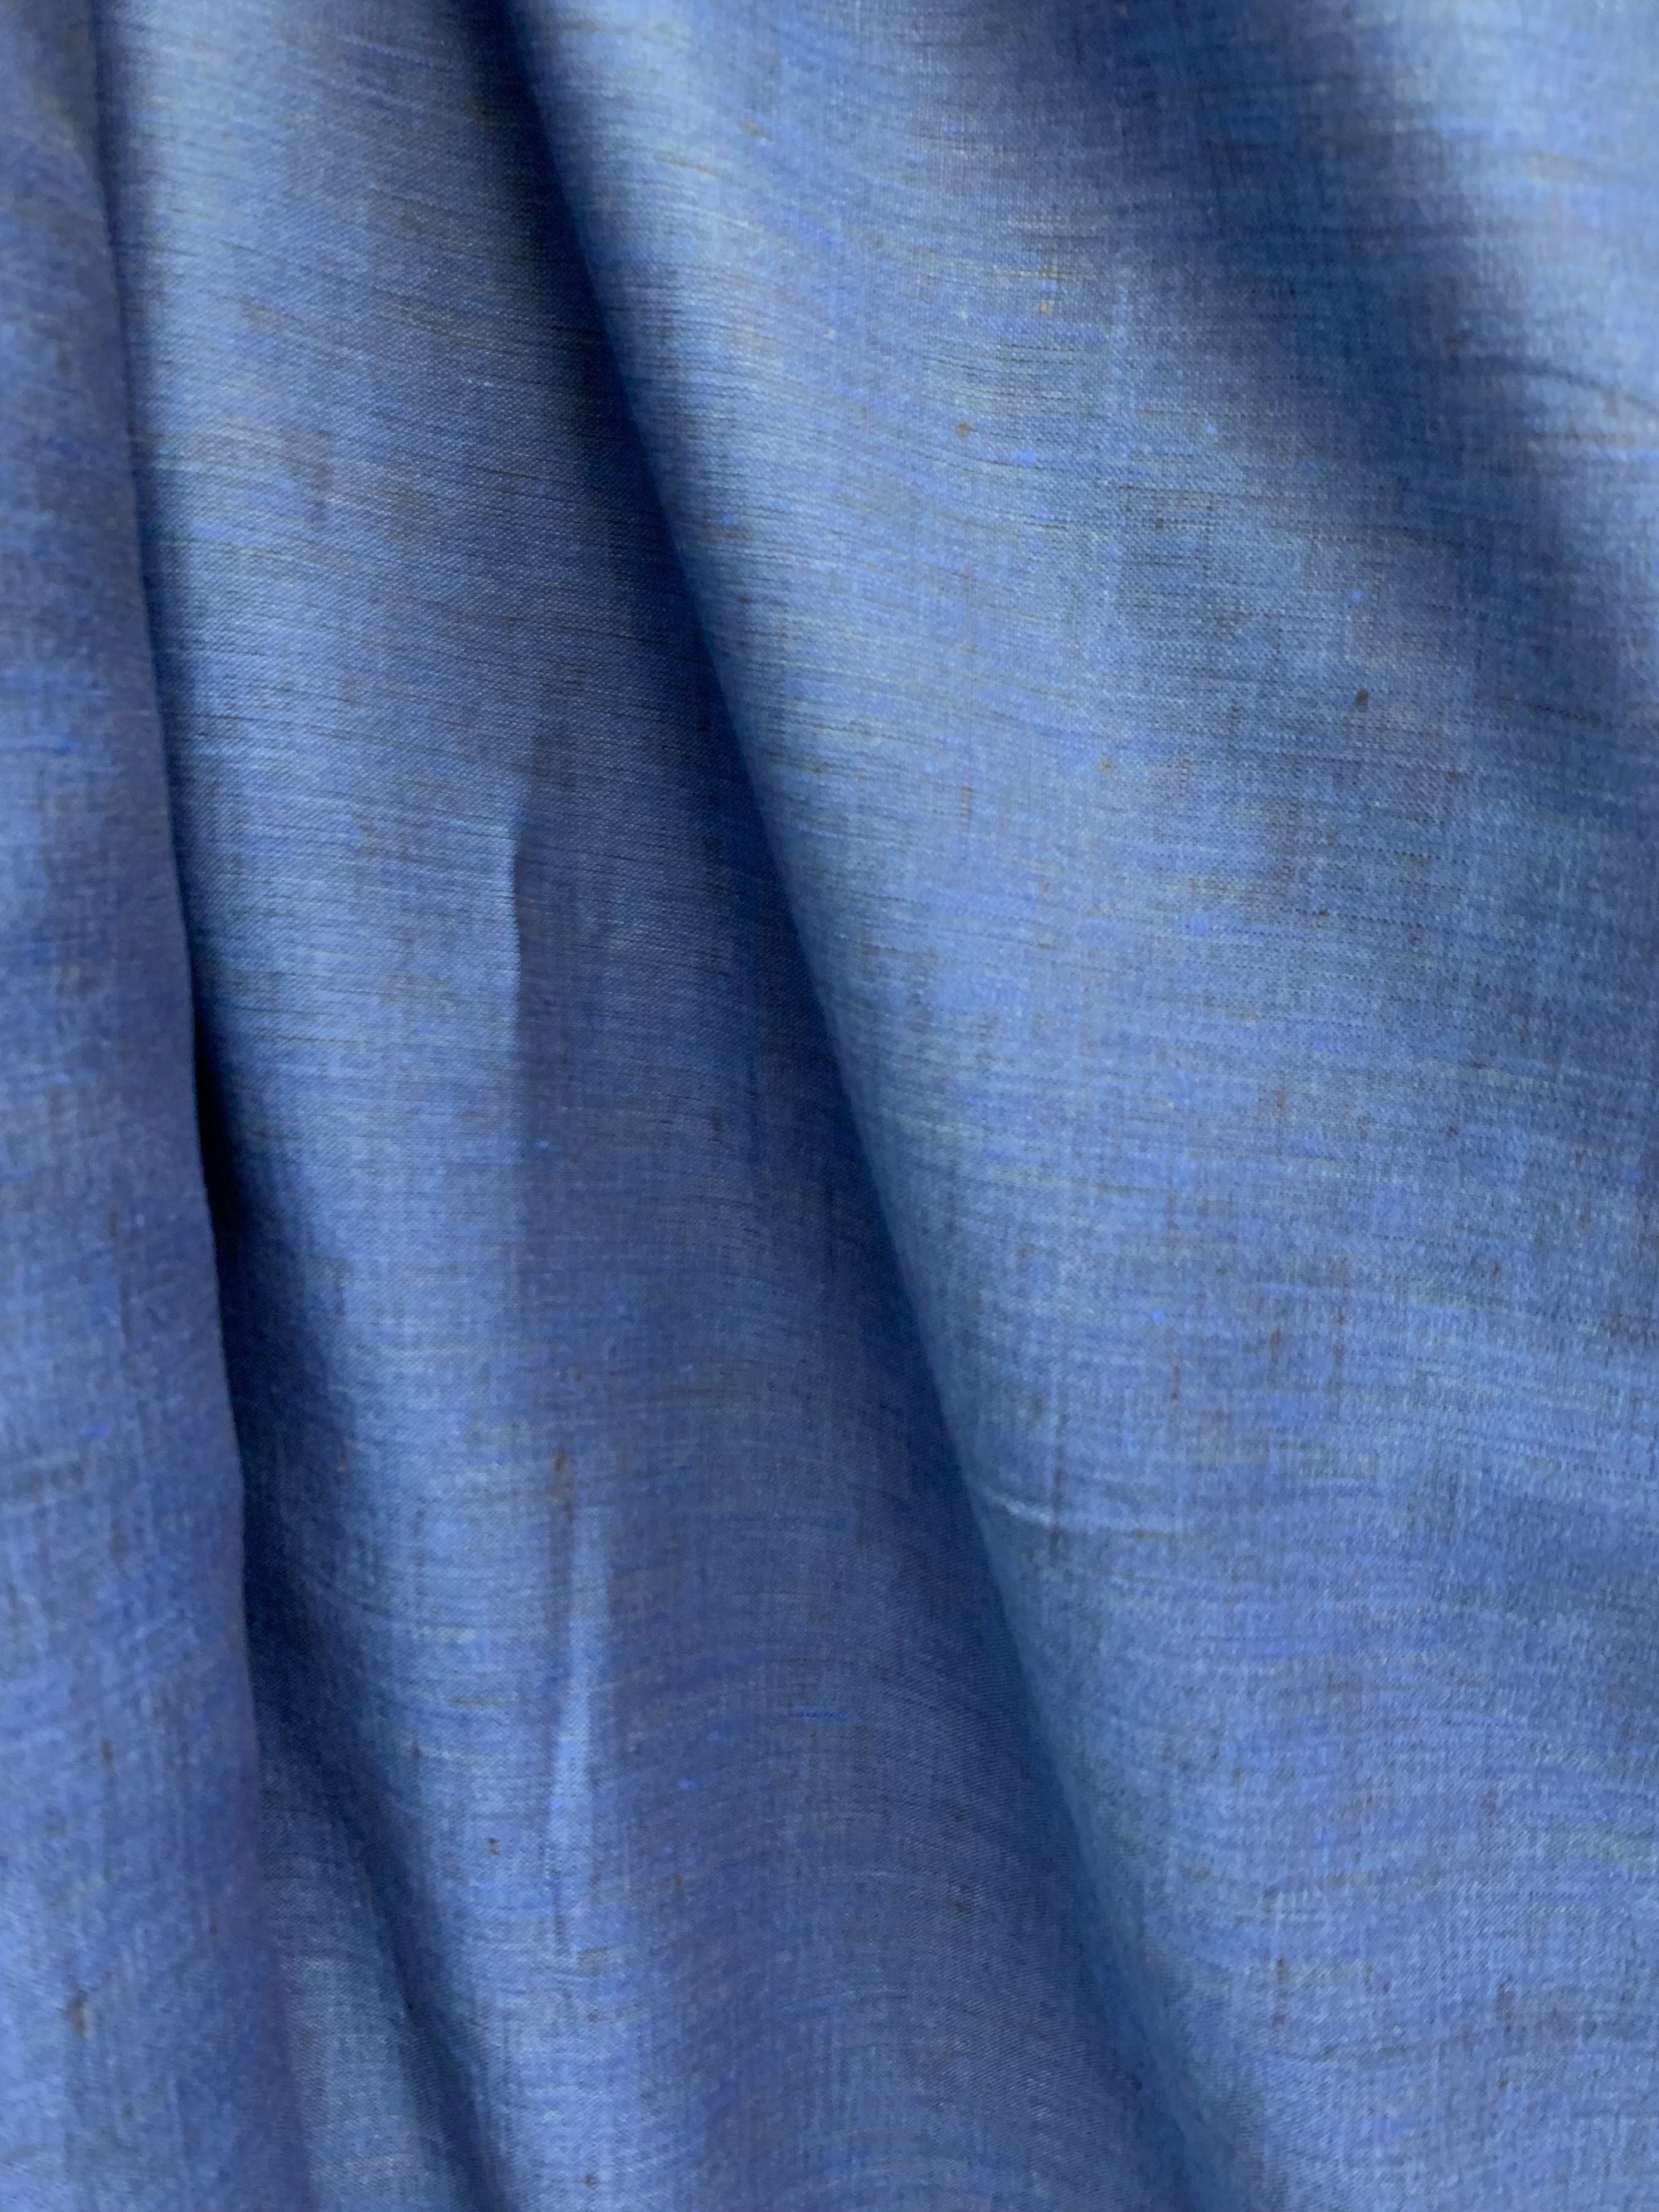 Cobalt blue linen fabric.